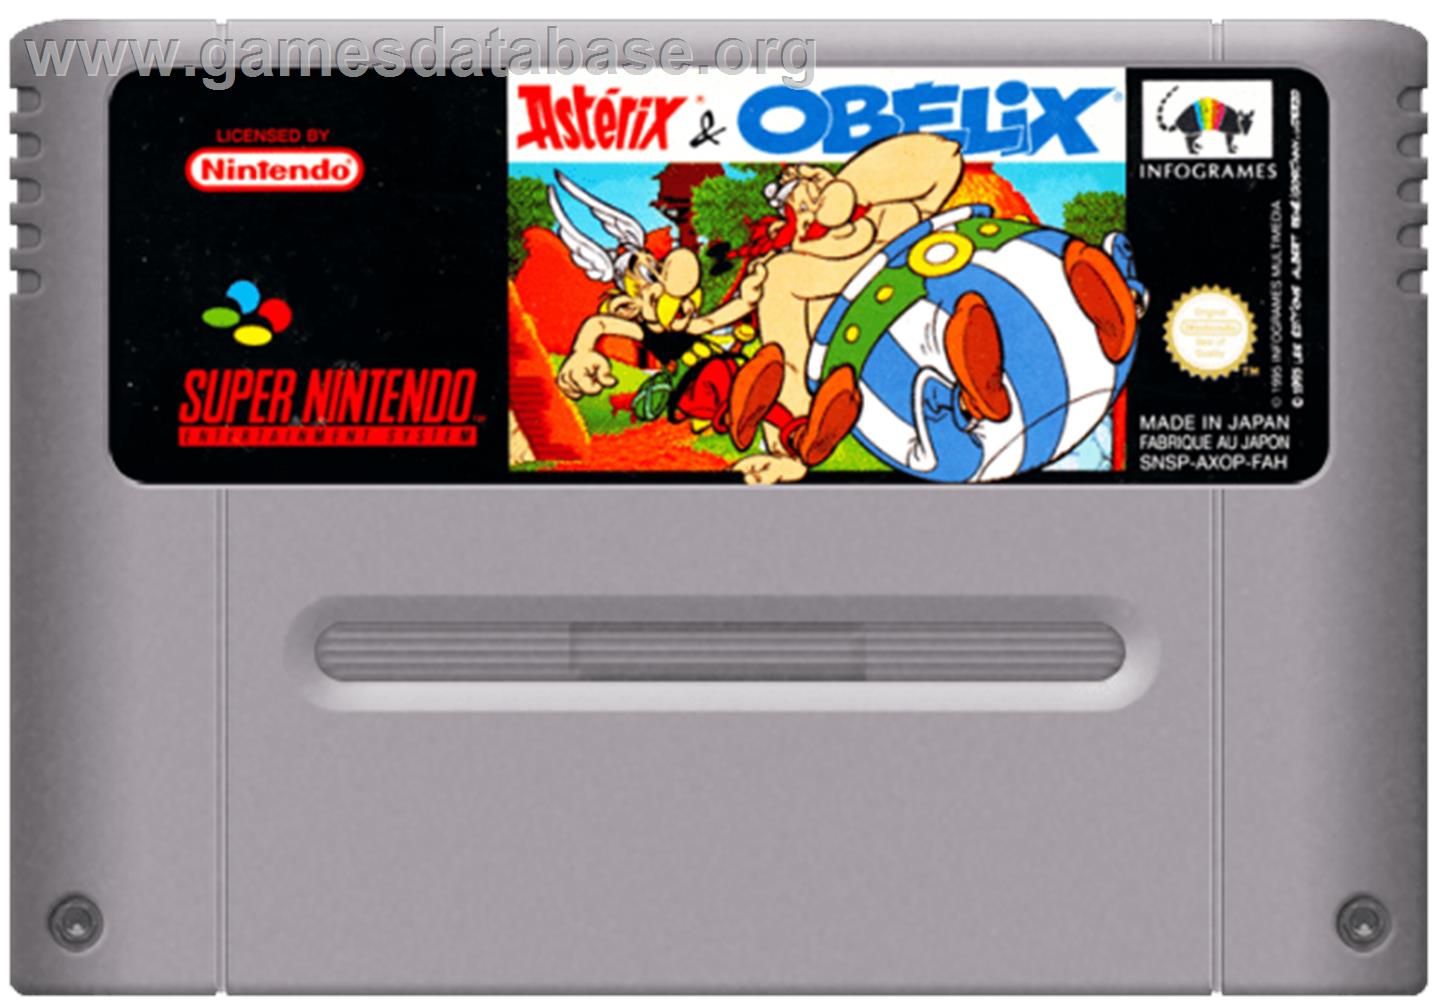 Asterix and Obelix - Nintendo SNES - Artwork - Cartridge